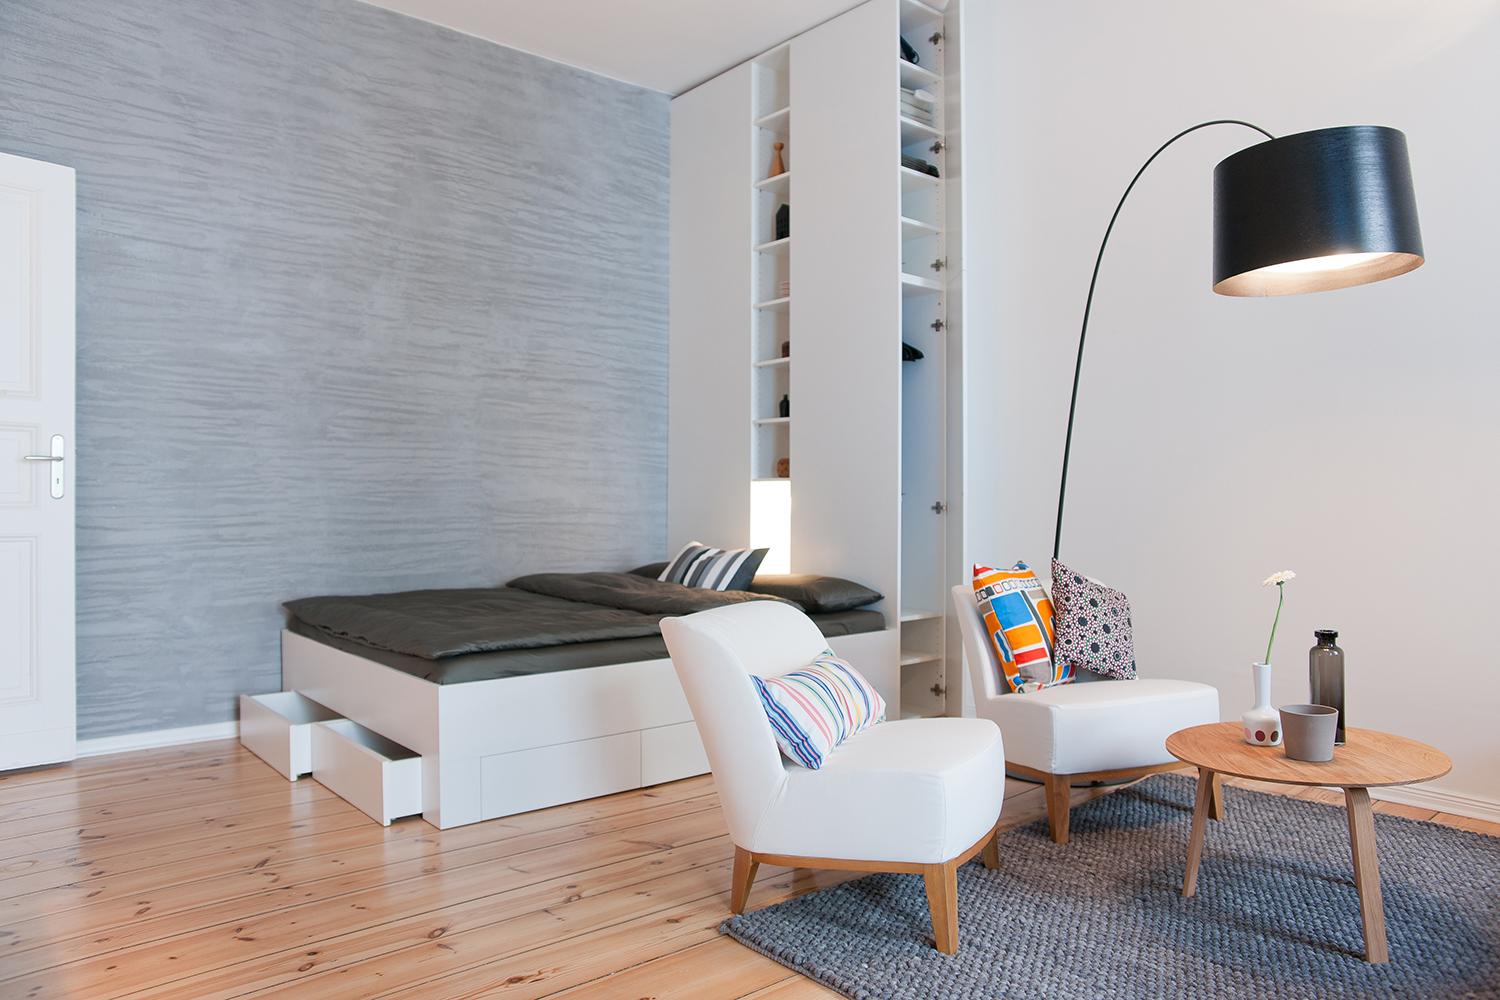 Schlafzimmer, Wohnzimmer #couchtisch #bogenlampe #sessel #bettkasten #ikea #minimalismus ©White Apartments